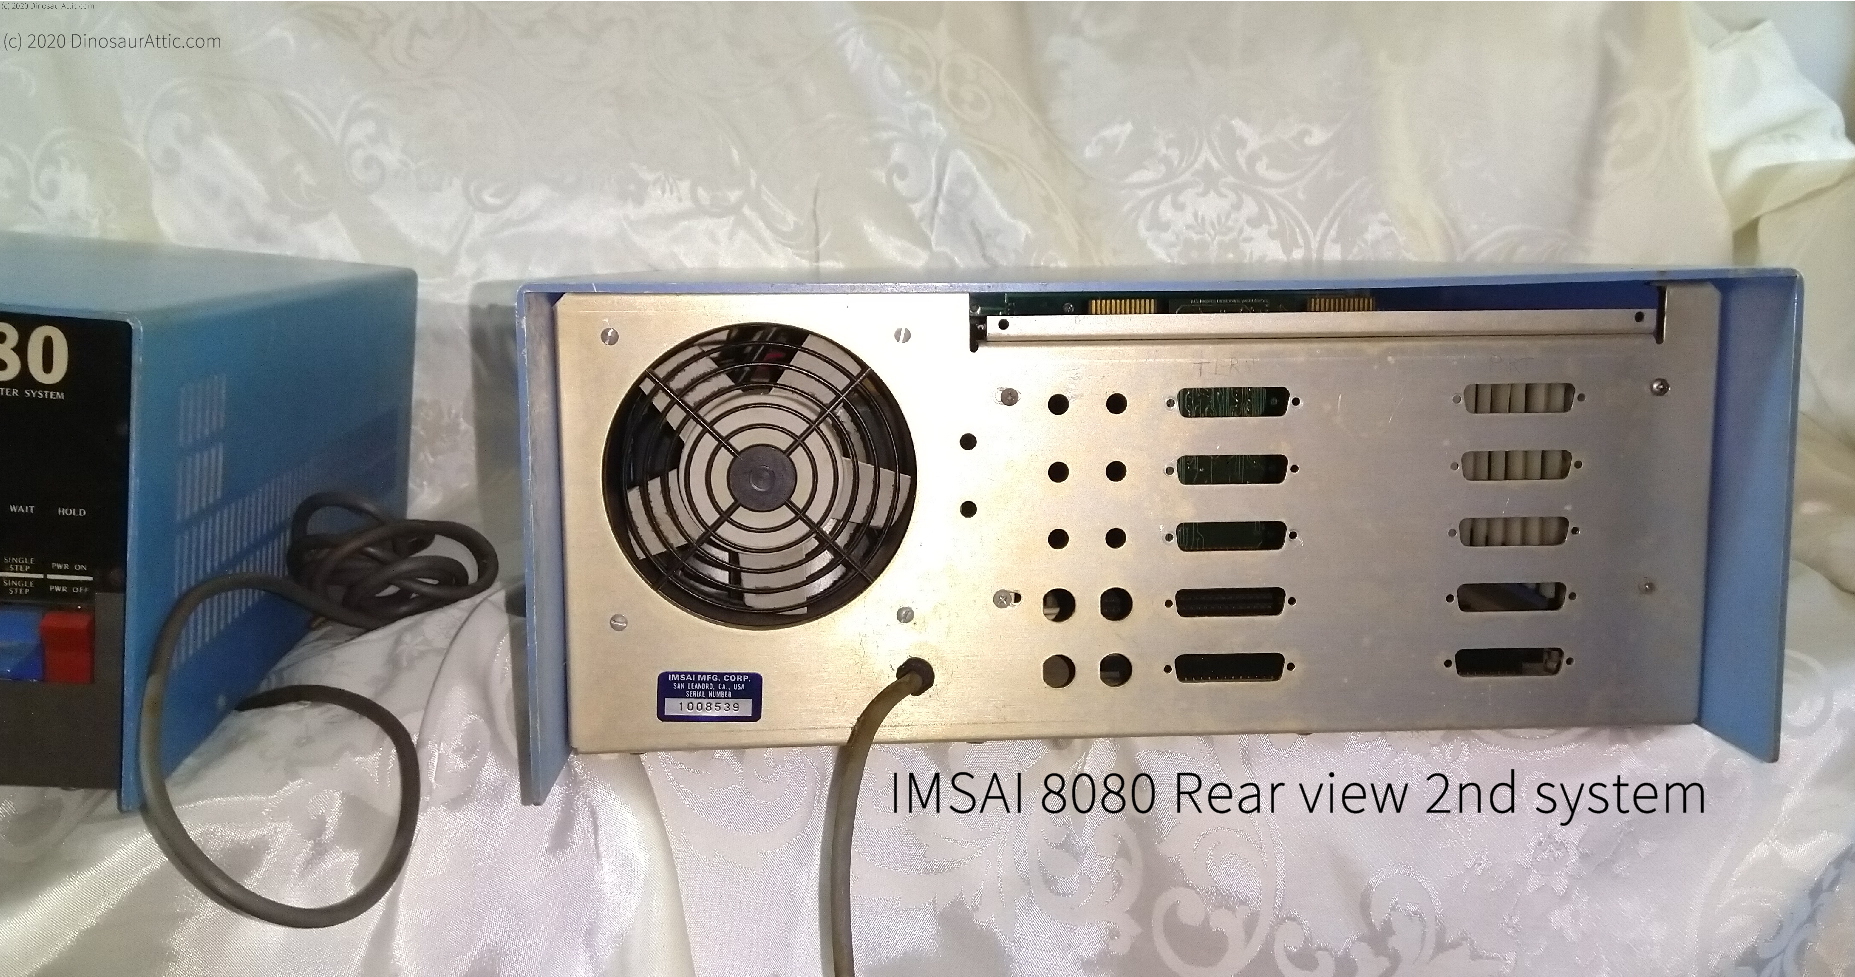 <b>IMSAI 8080 Rear view 2nd system</b>